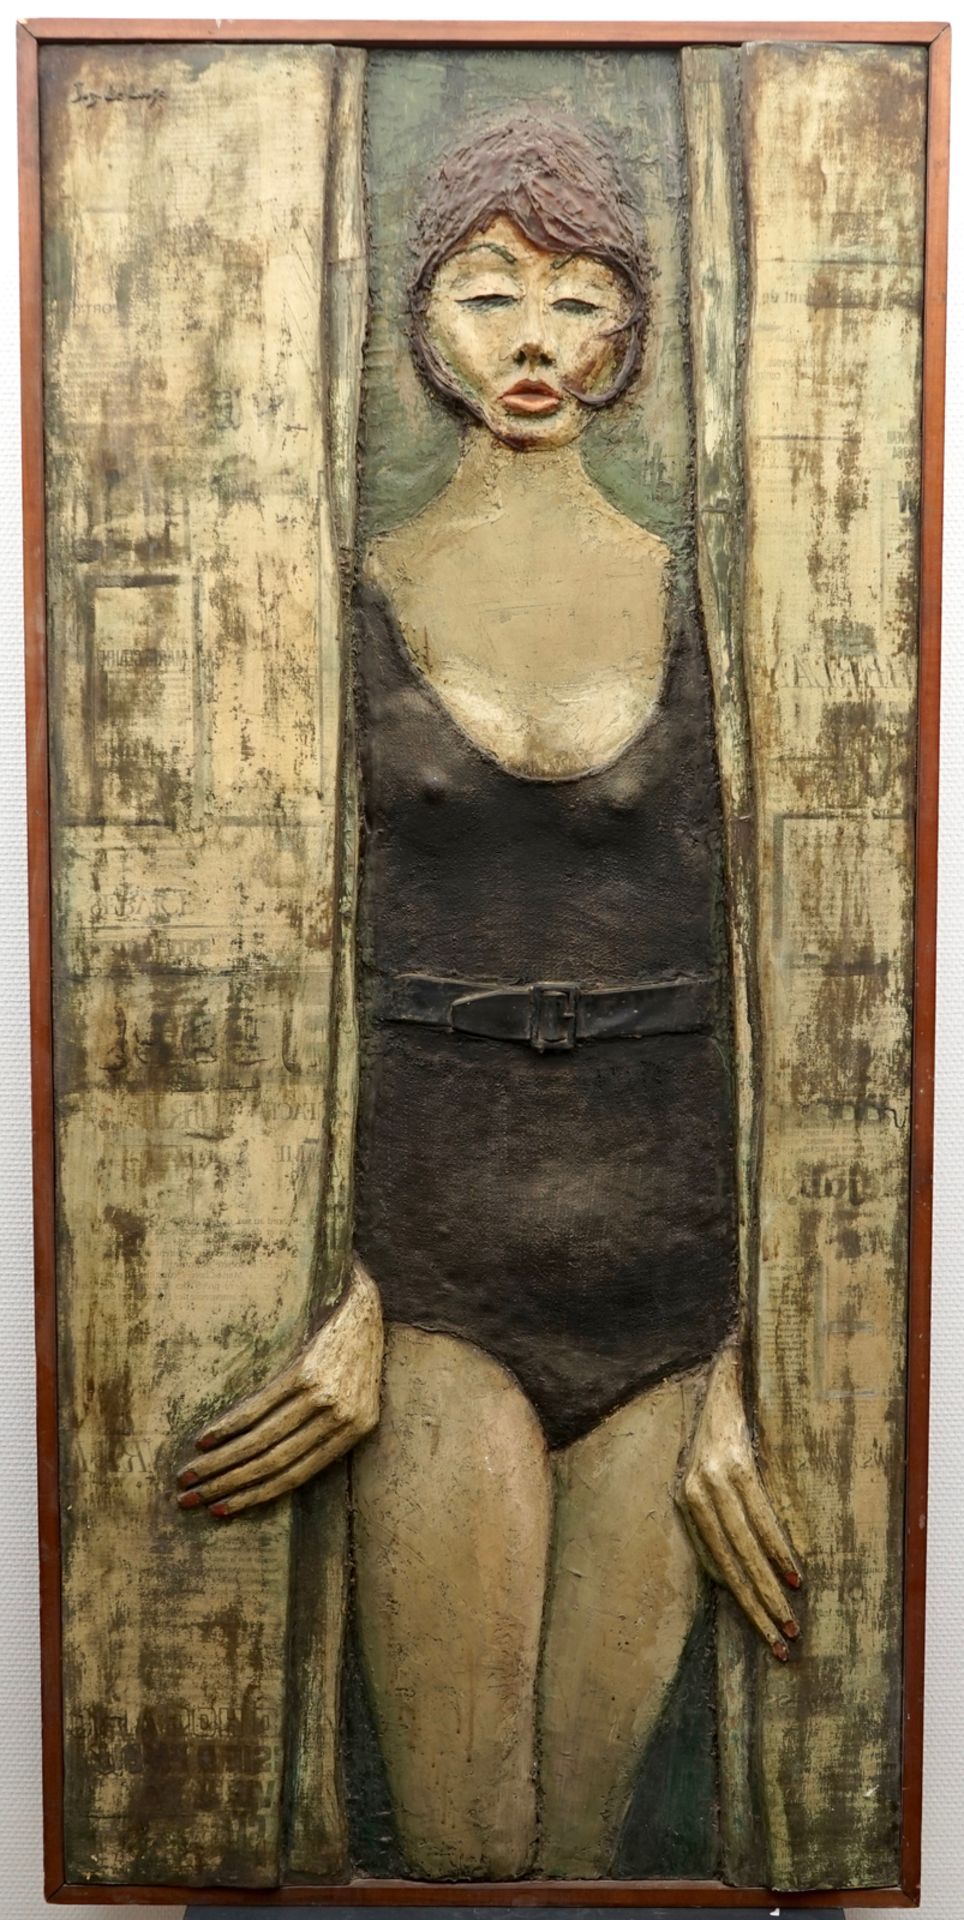 Joz De Loose (Bruges, 1925-2011), Plankenkoorts, 1966, polyester on panel Dim.: 153 x 73,5 cm - Image 2 of 2